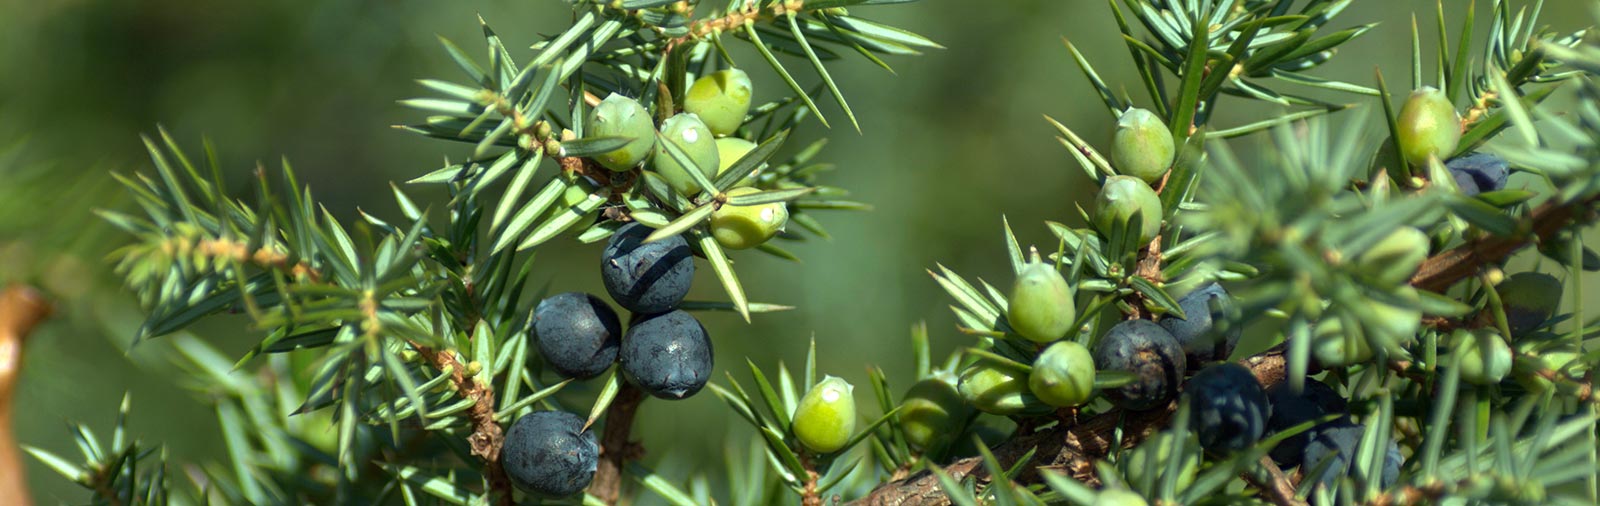 Wacholder - Juniperus communis L.